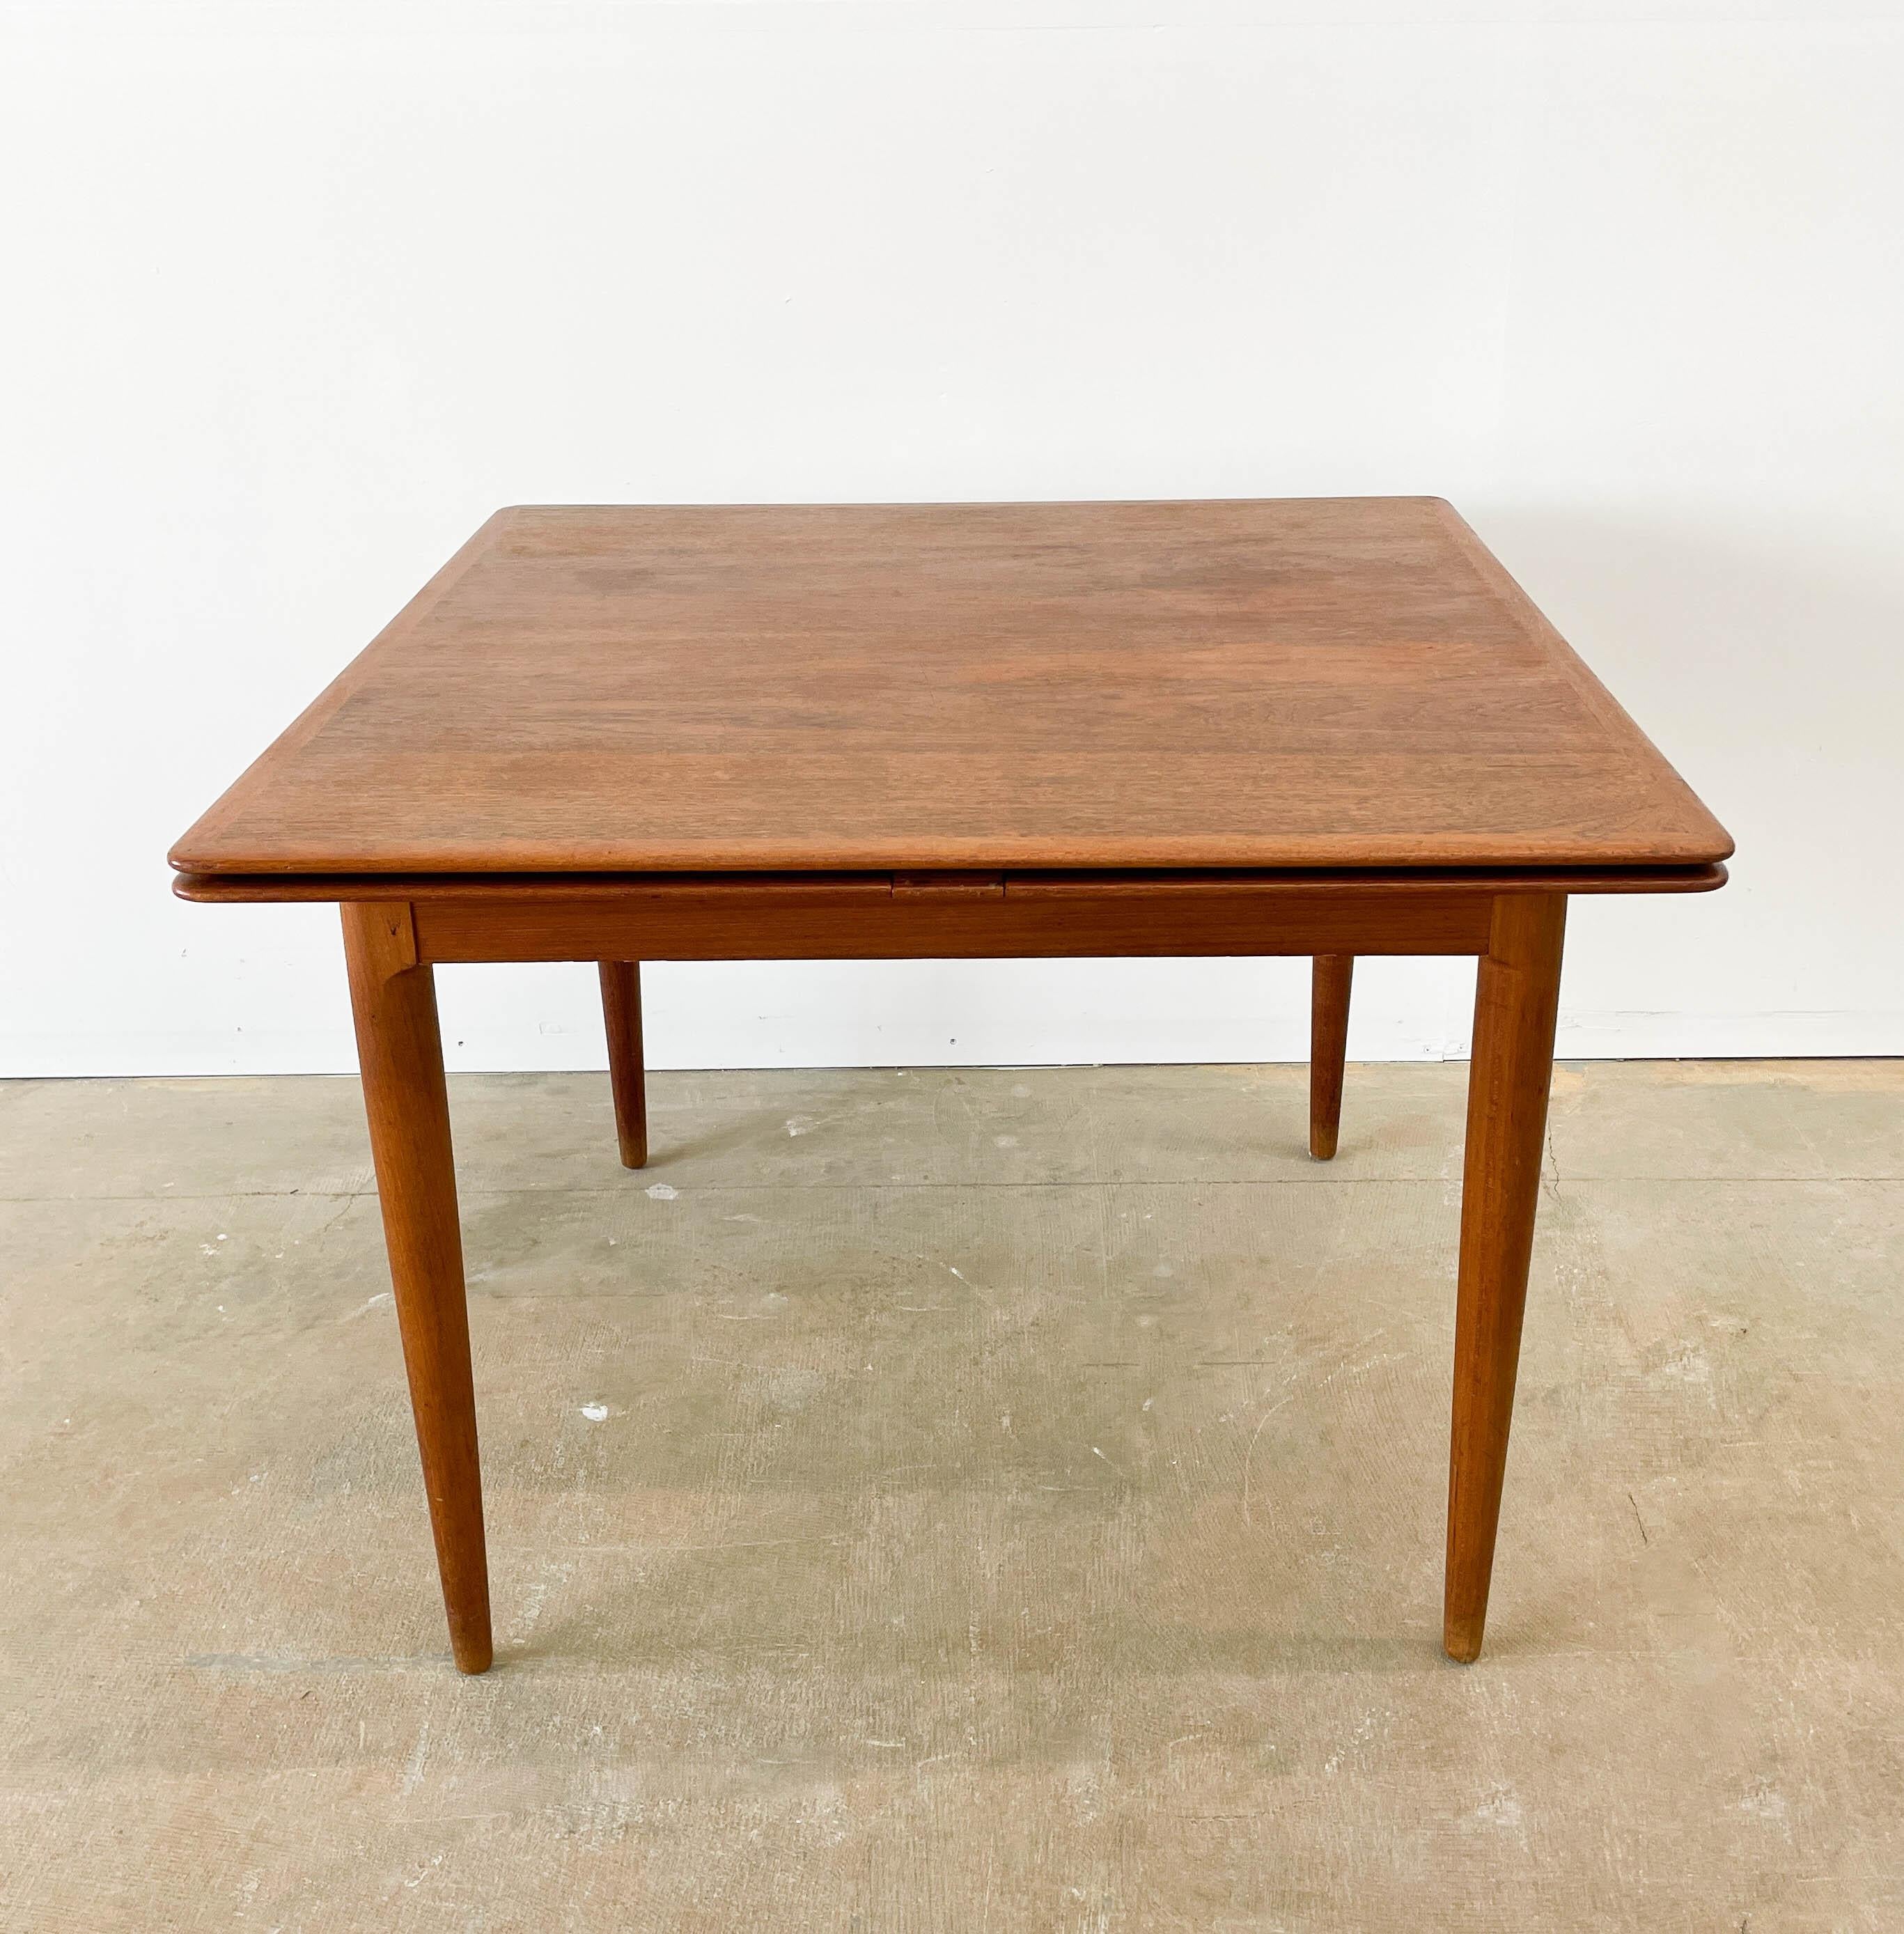 Importée par Morreddi dans les années 1960, cette table danoise en teck de style moderne du milieu du siècle s'étend d'une forme carrée à un rectangle plus grand. Lorsqu'elle est entièrement déployée, la table peut accueillir 6 à 8 personnes. Les